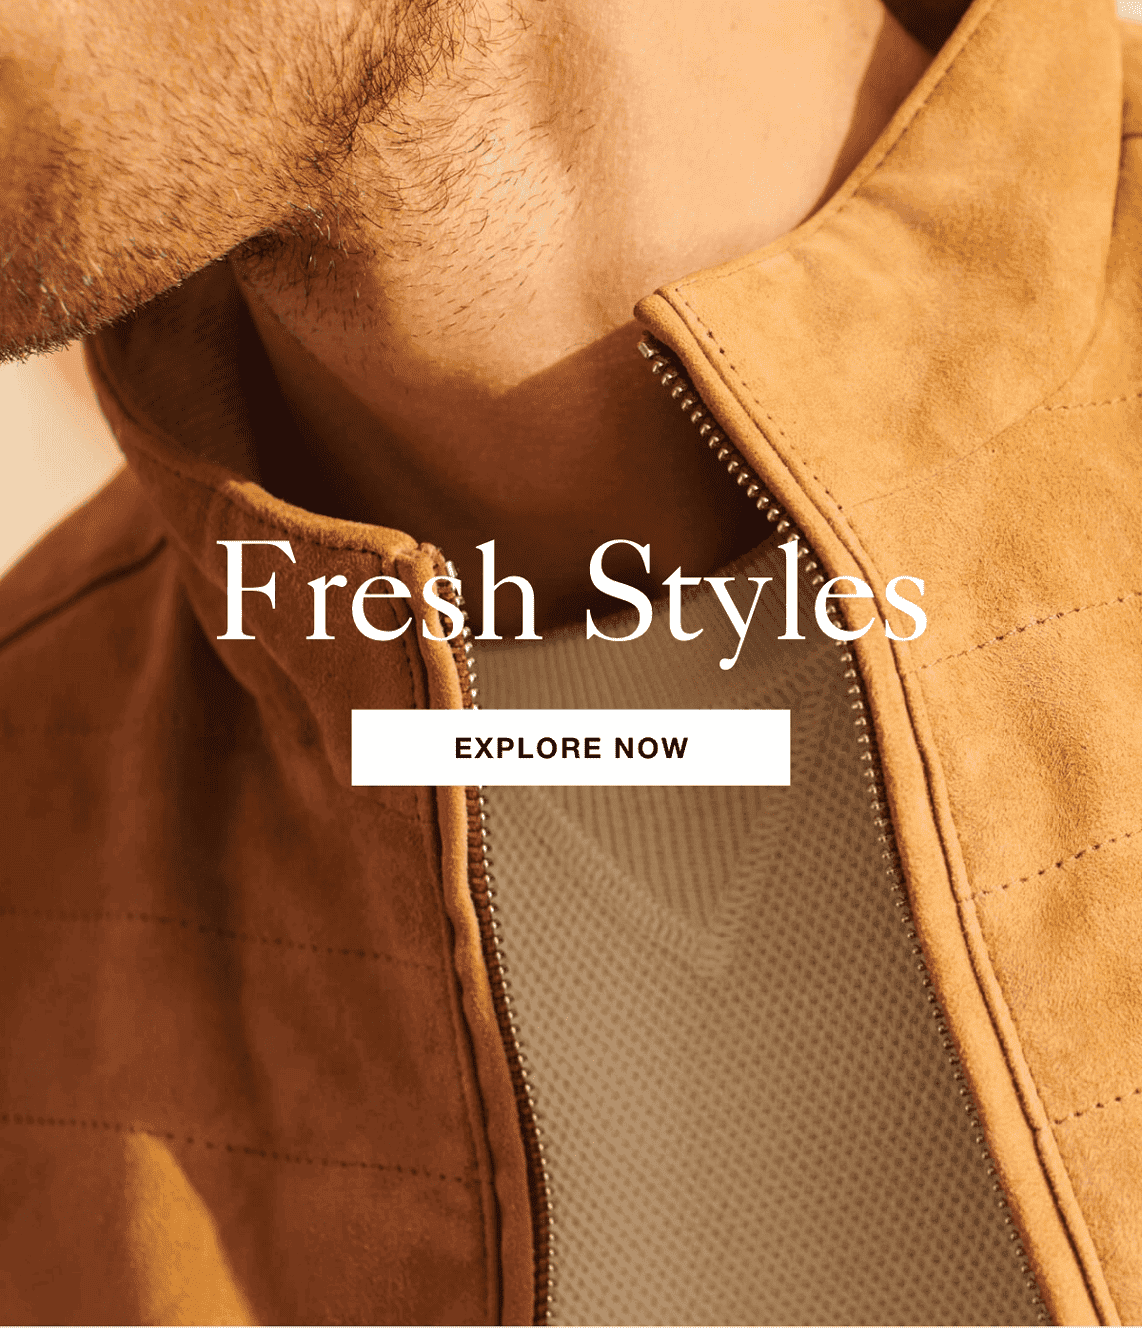 Fresh Styles - Explore Now